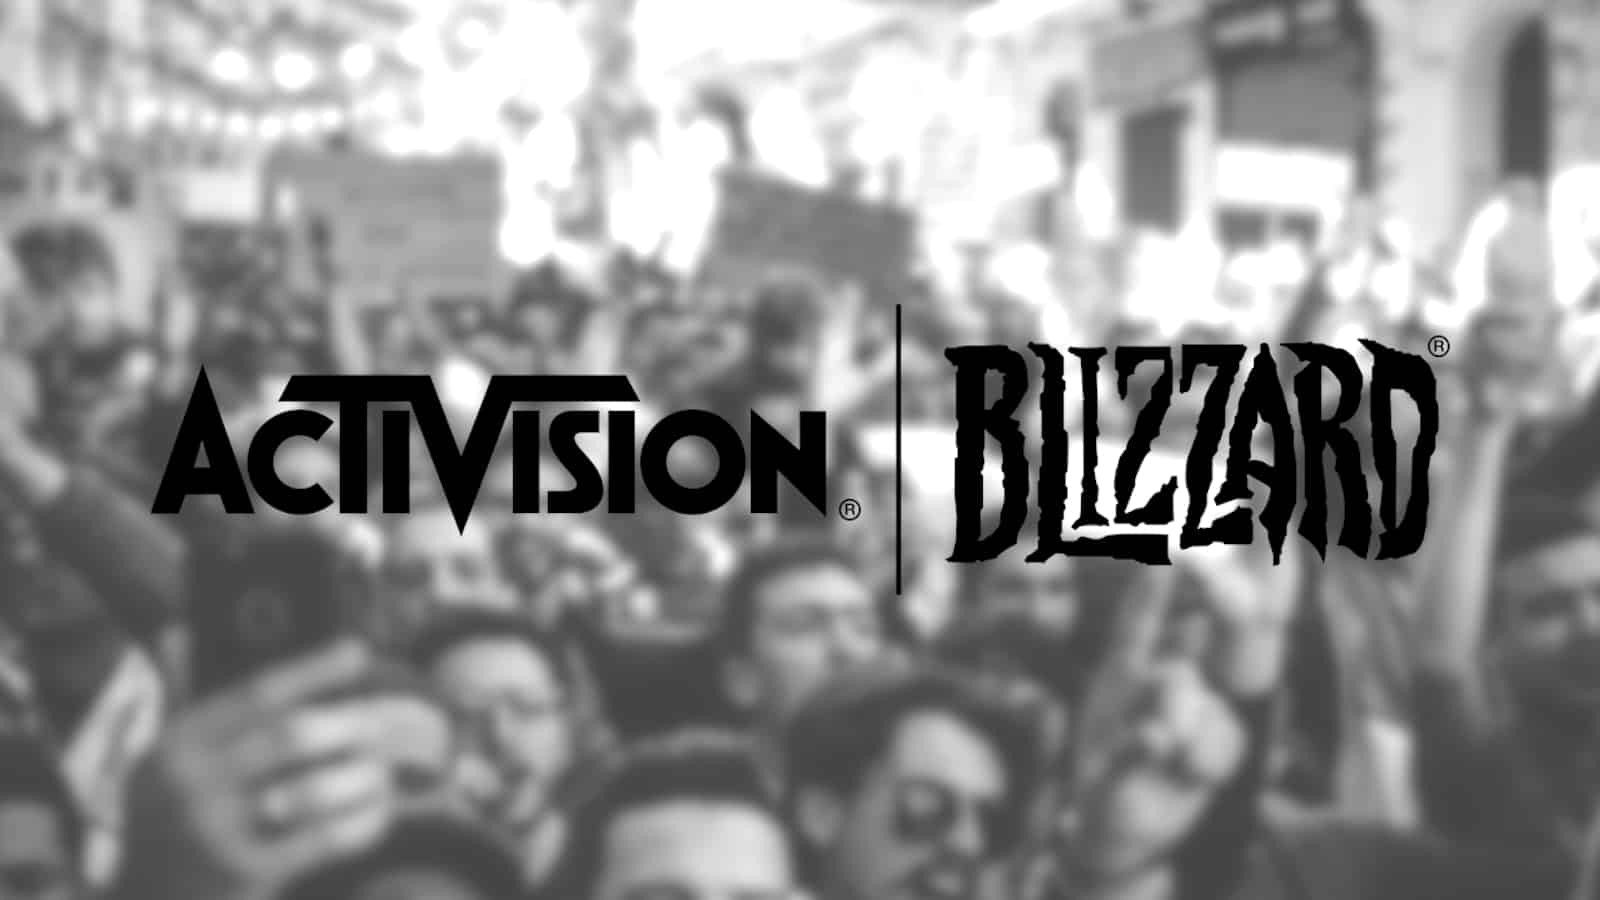 Mais de 30 funcionrios deixaram a Activision Blizzard desde julho de 2021, diz jornal